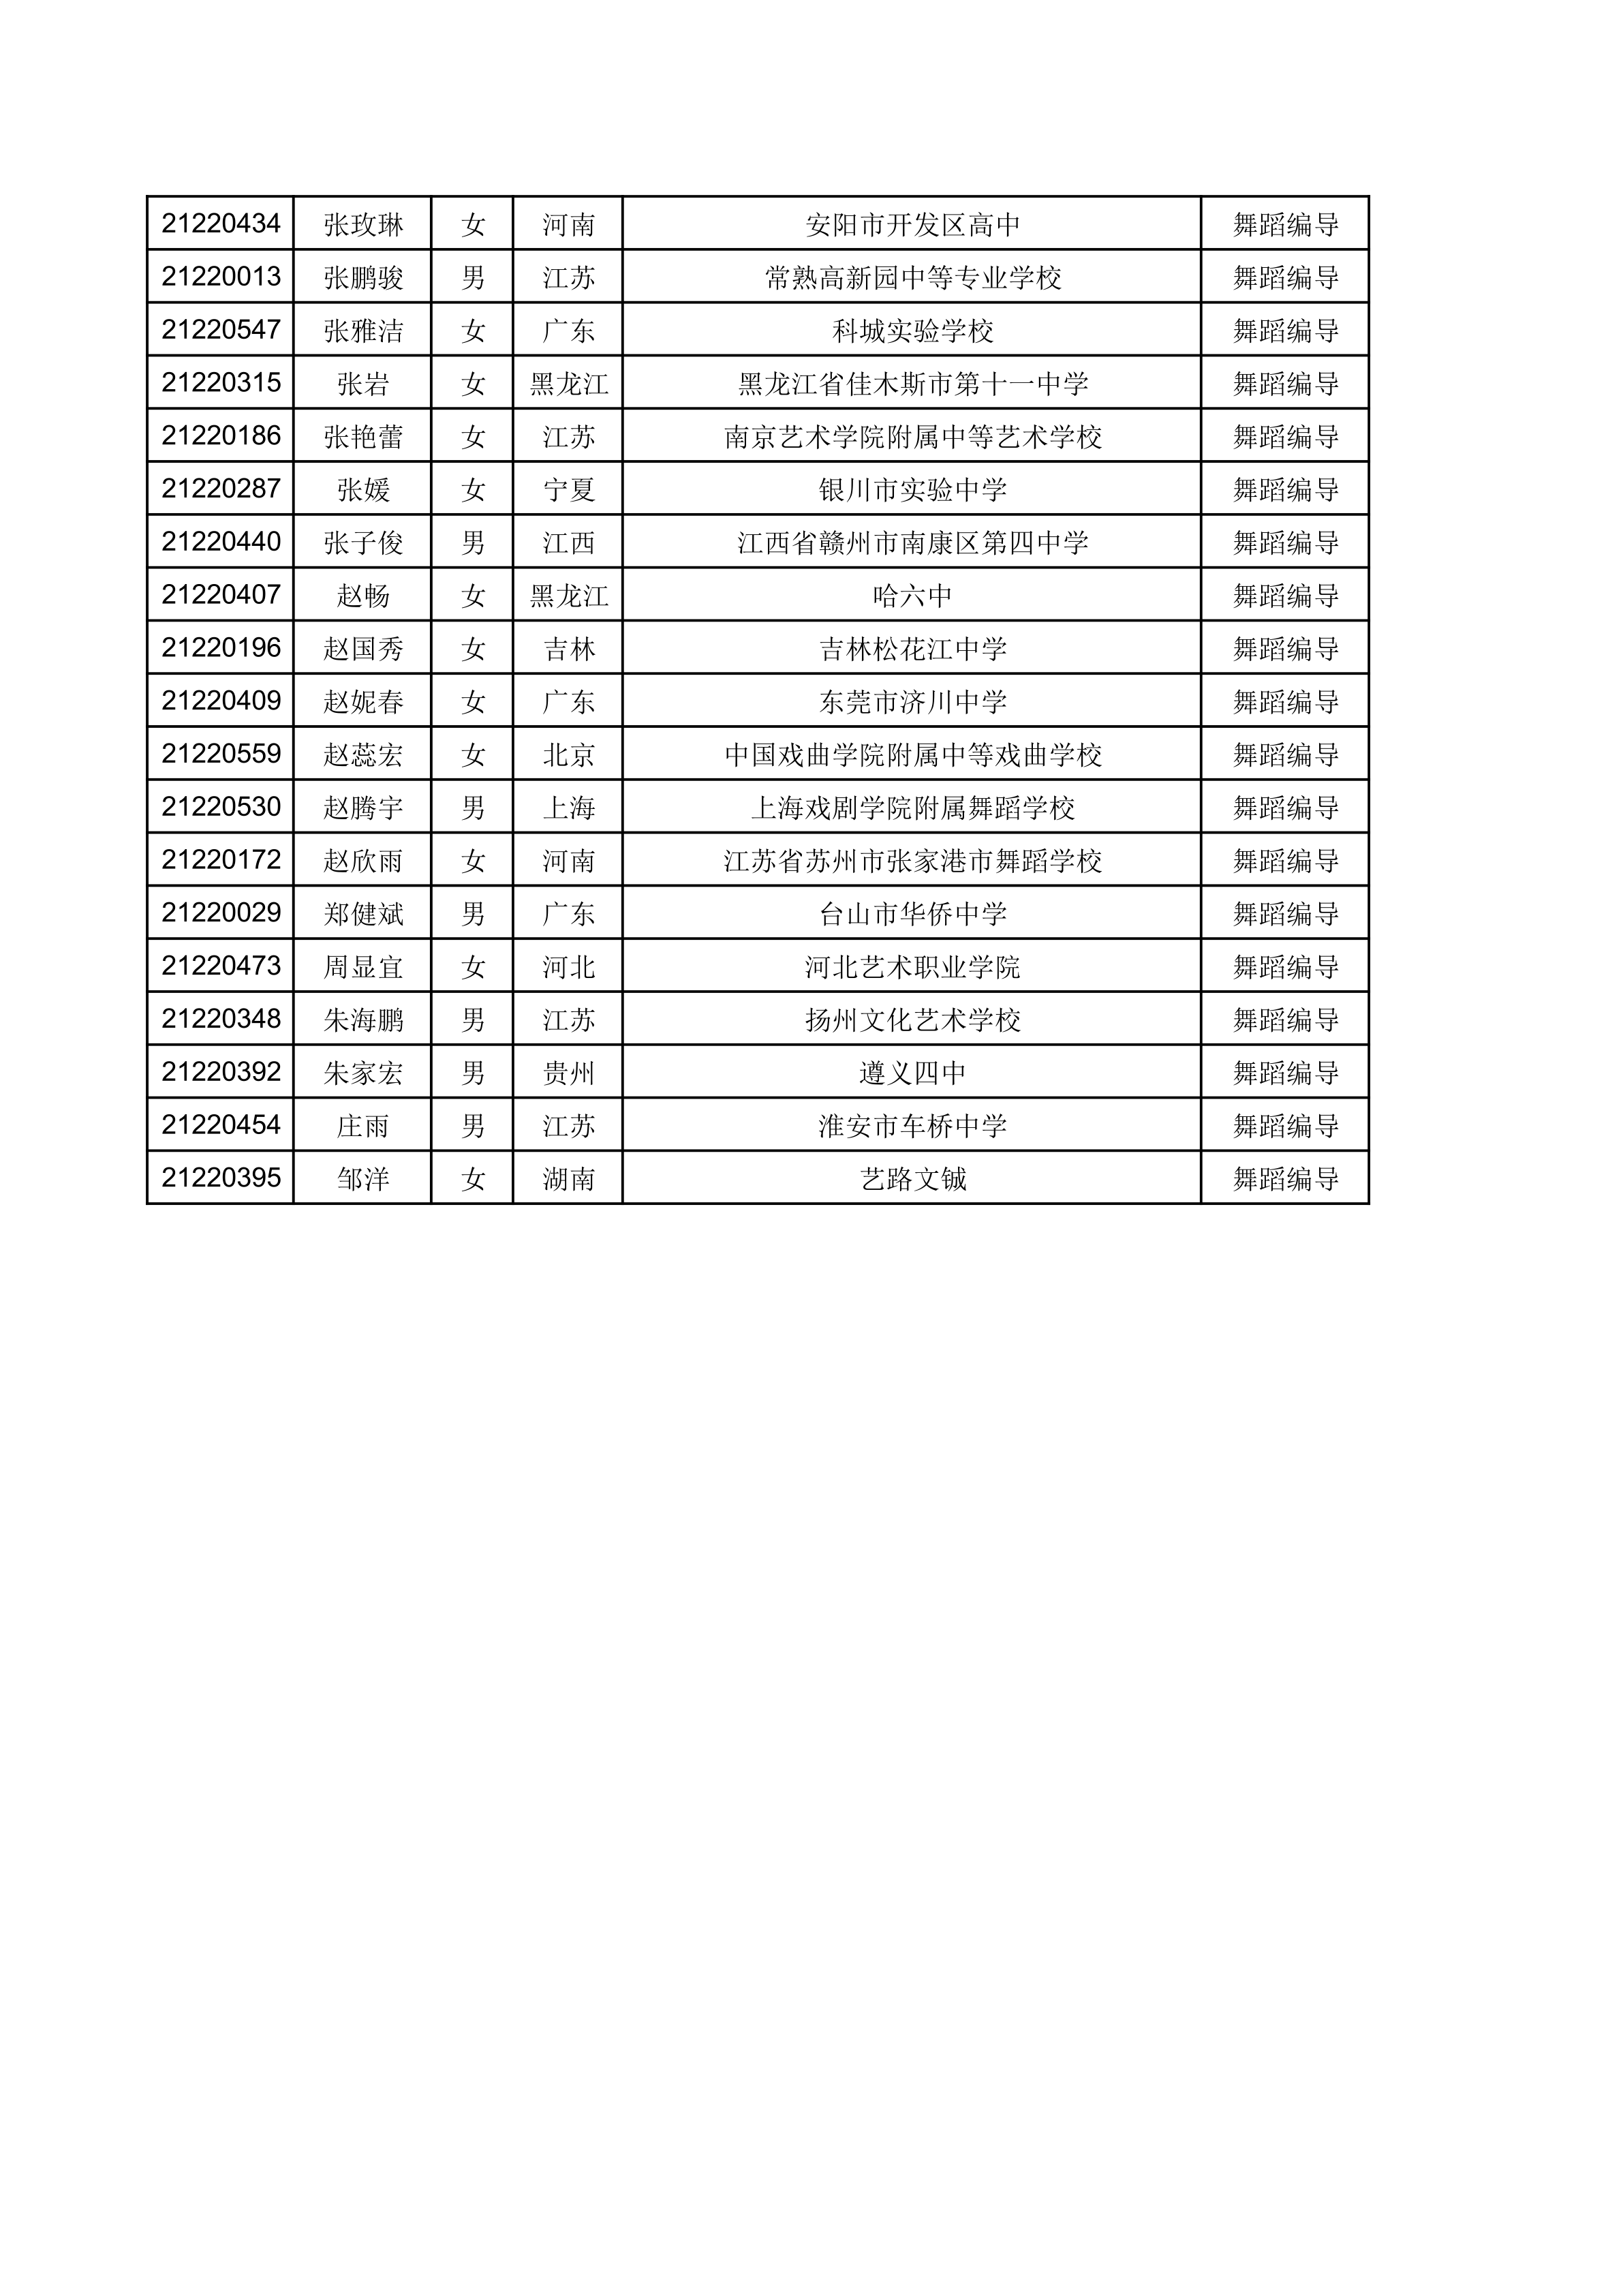 江南大学2021年舞蹈编导专业校考合格考生名单（按姓名排序）_5.png